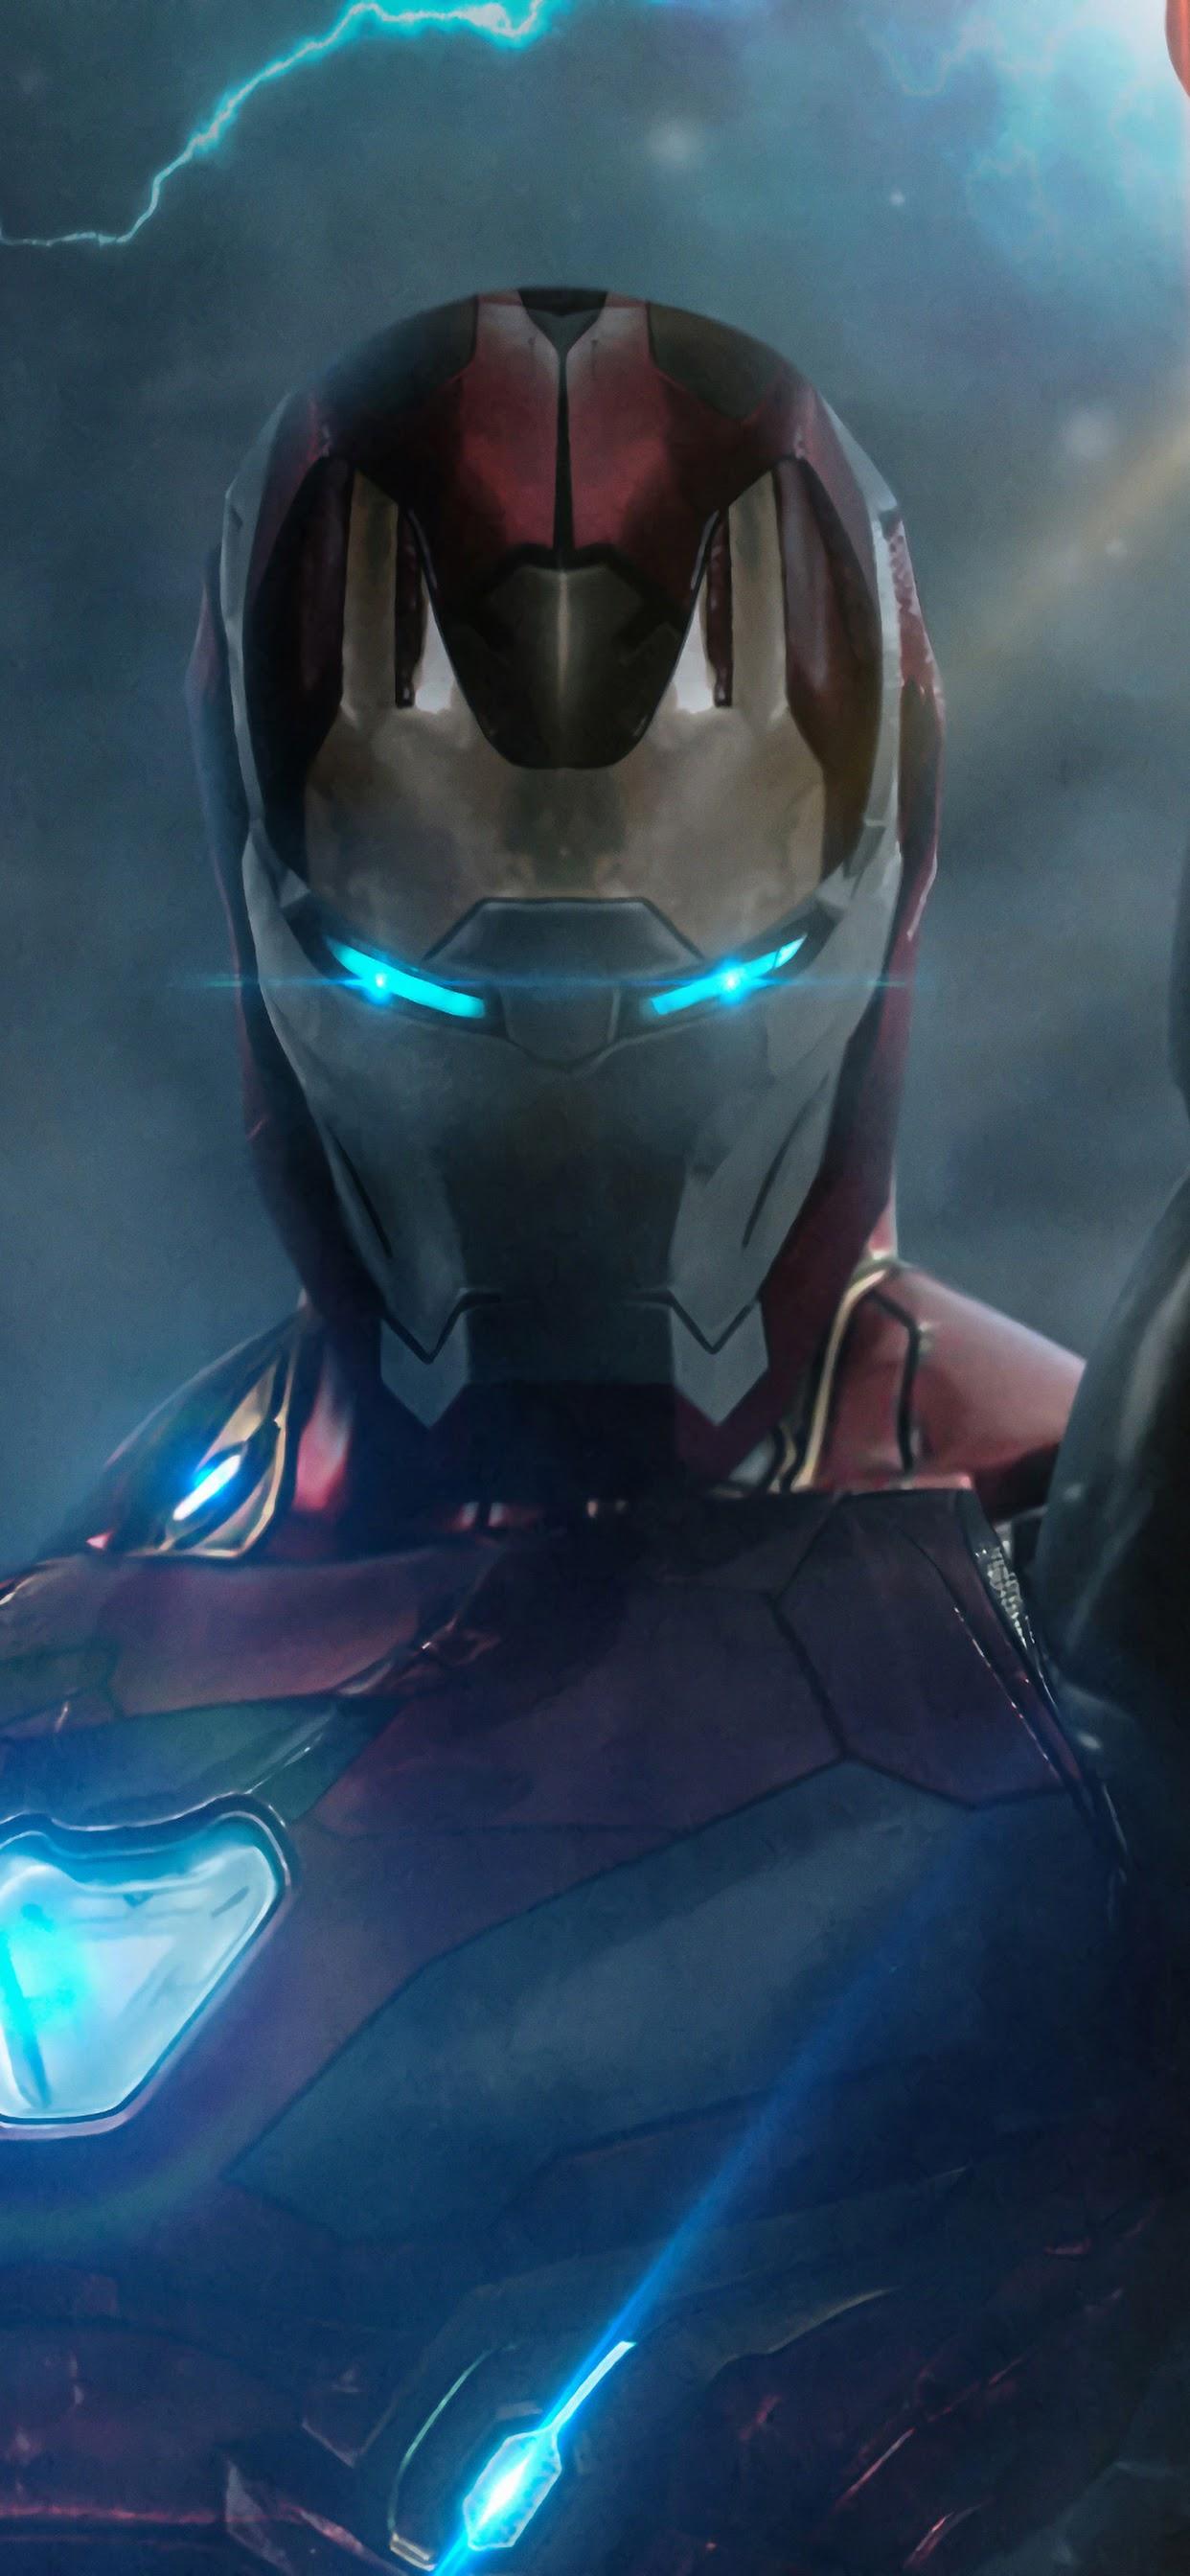 Iron Man Infinity Stones Avengers: Endgame 4K Wallpaper